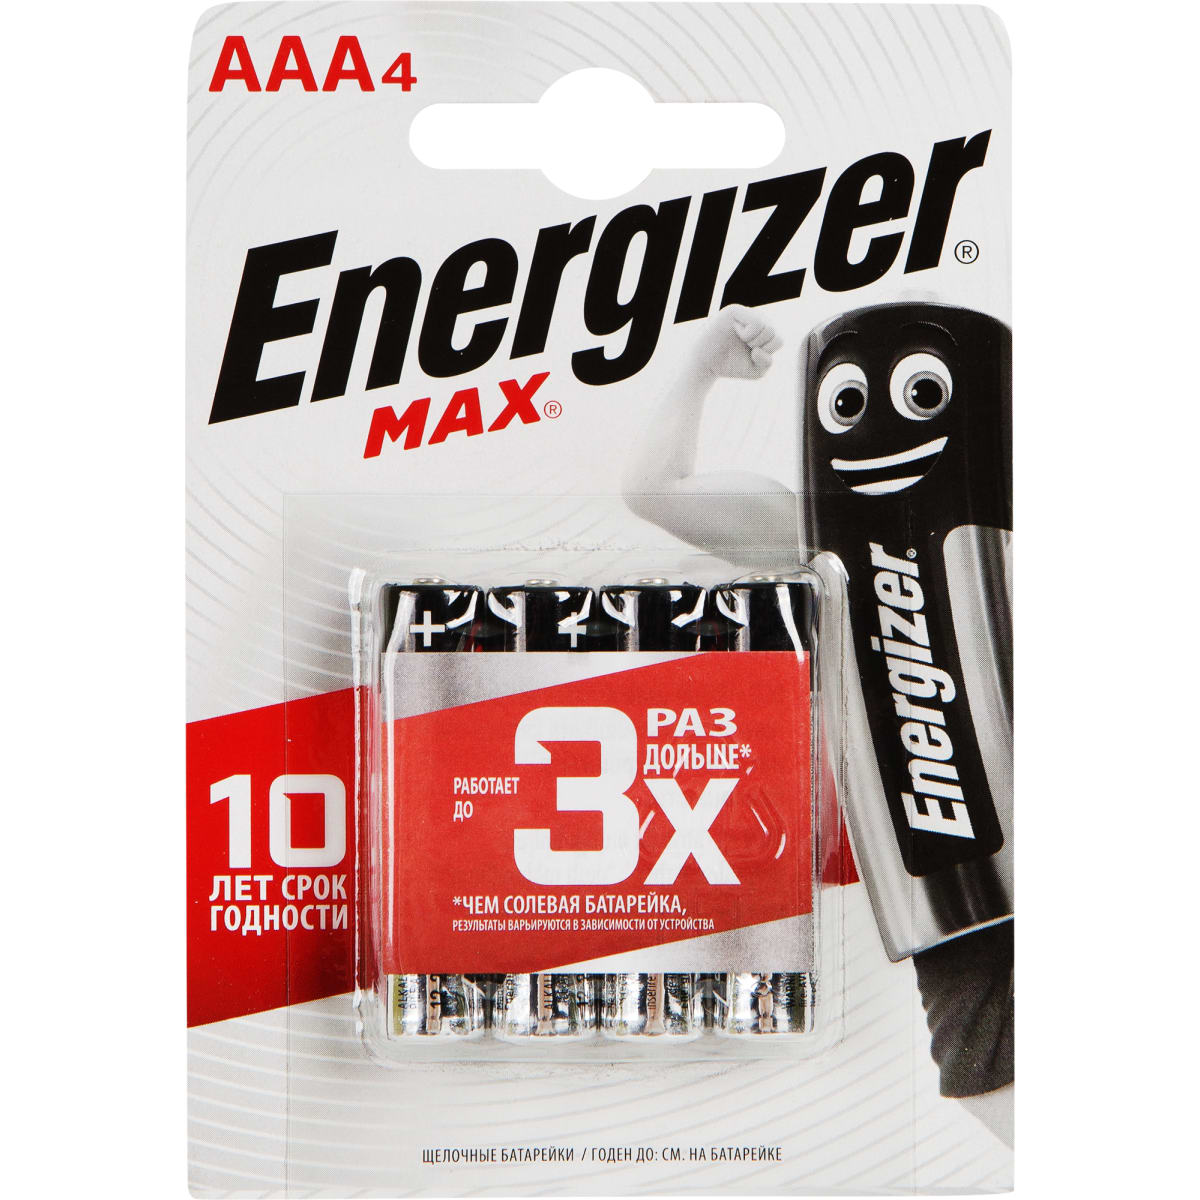 Батарейка Energizer Max AAA4 (LR03) (1шт)